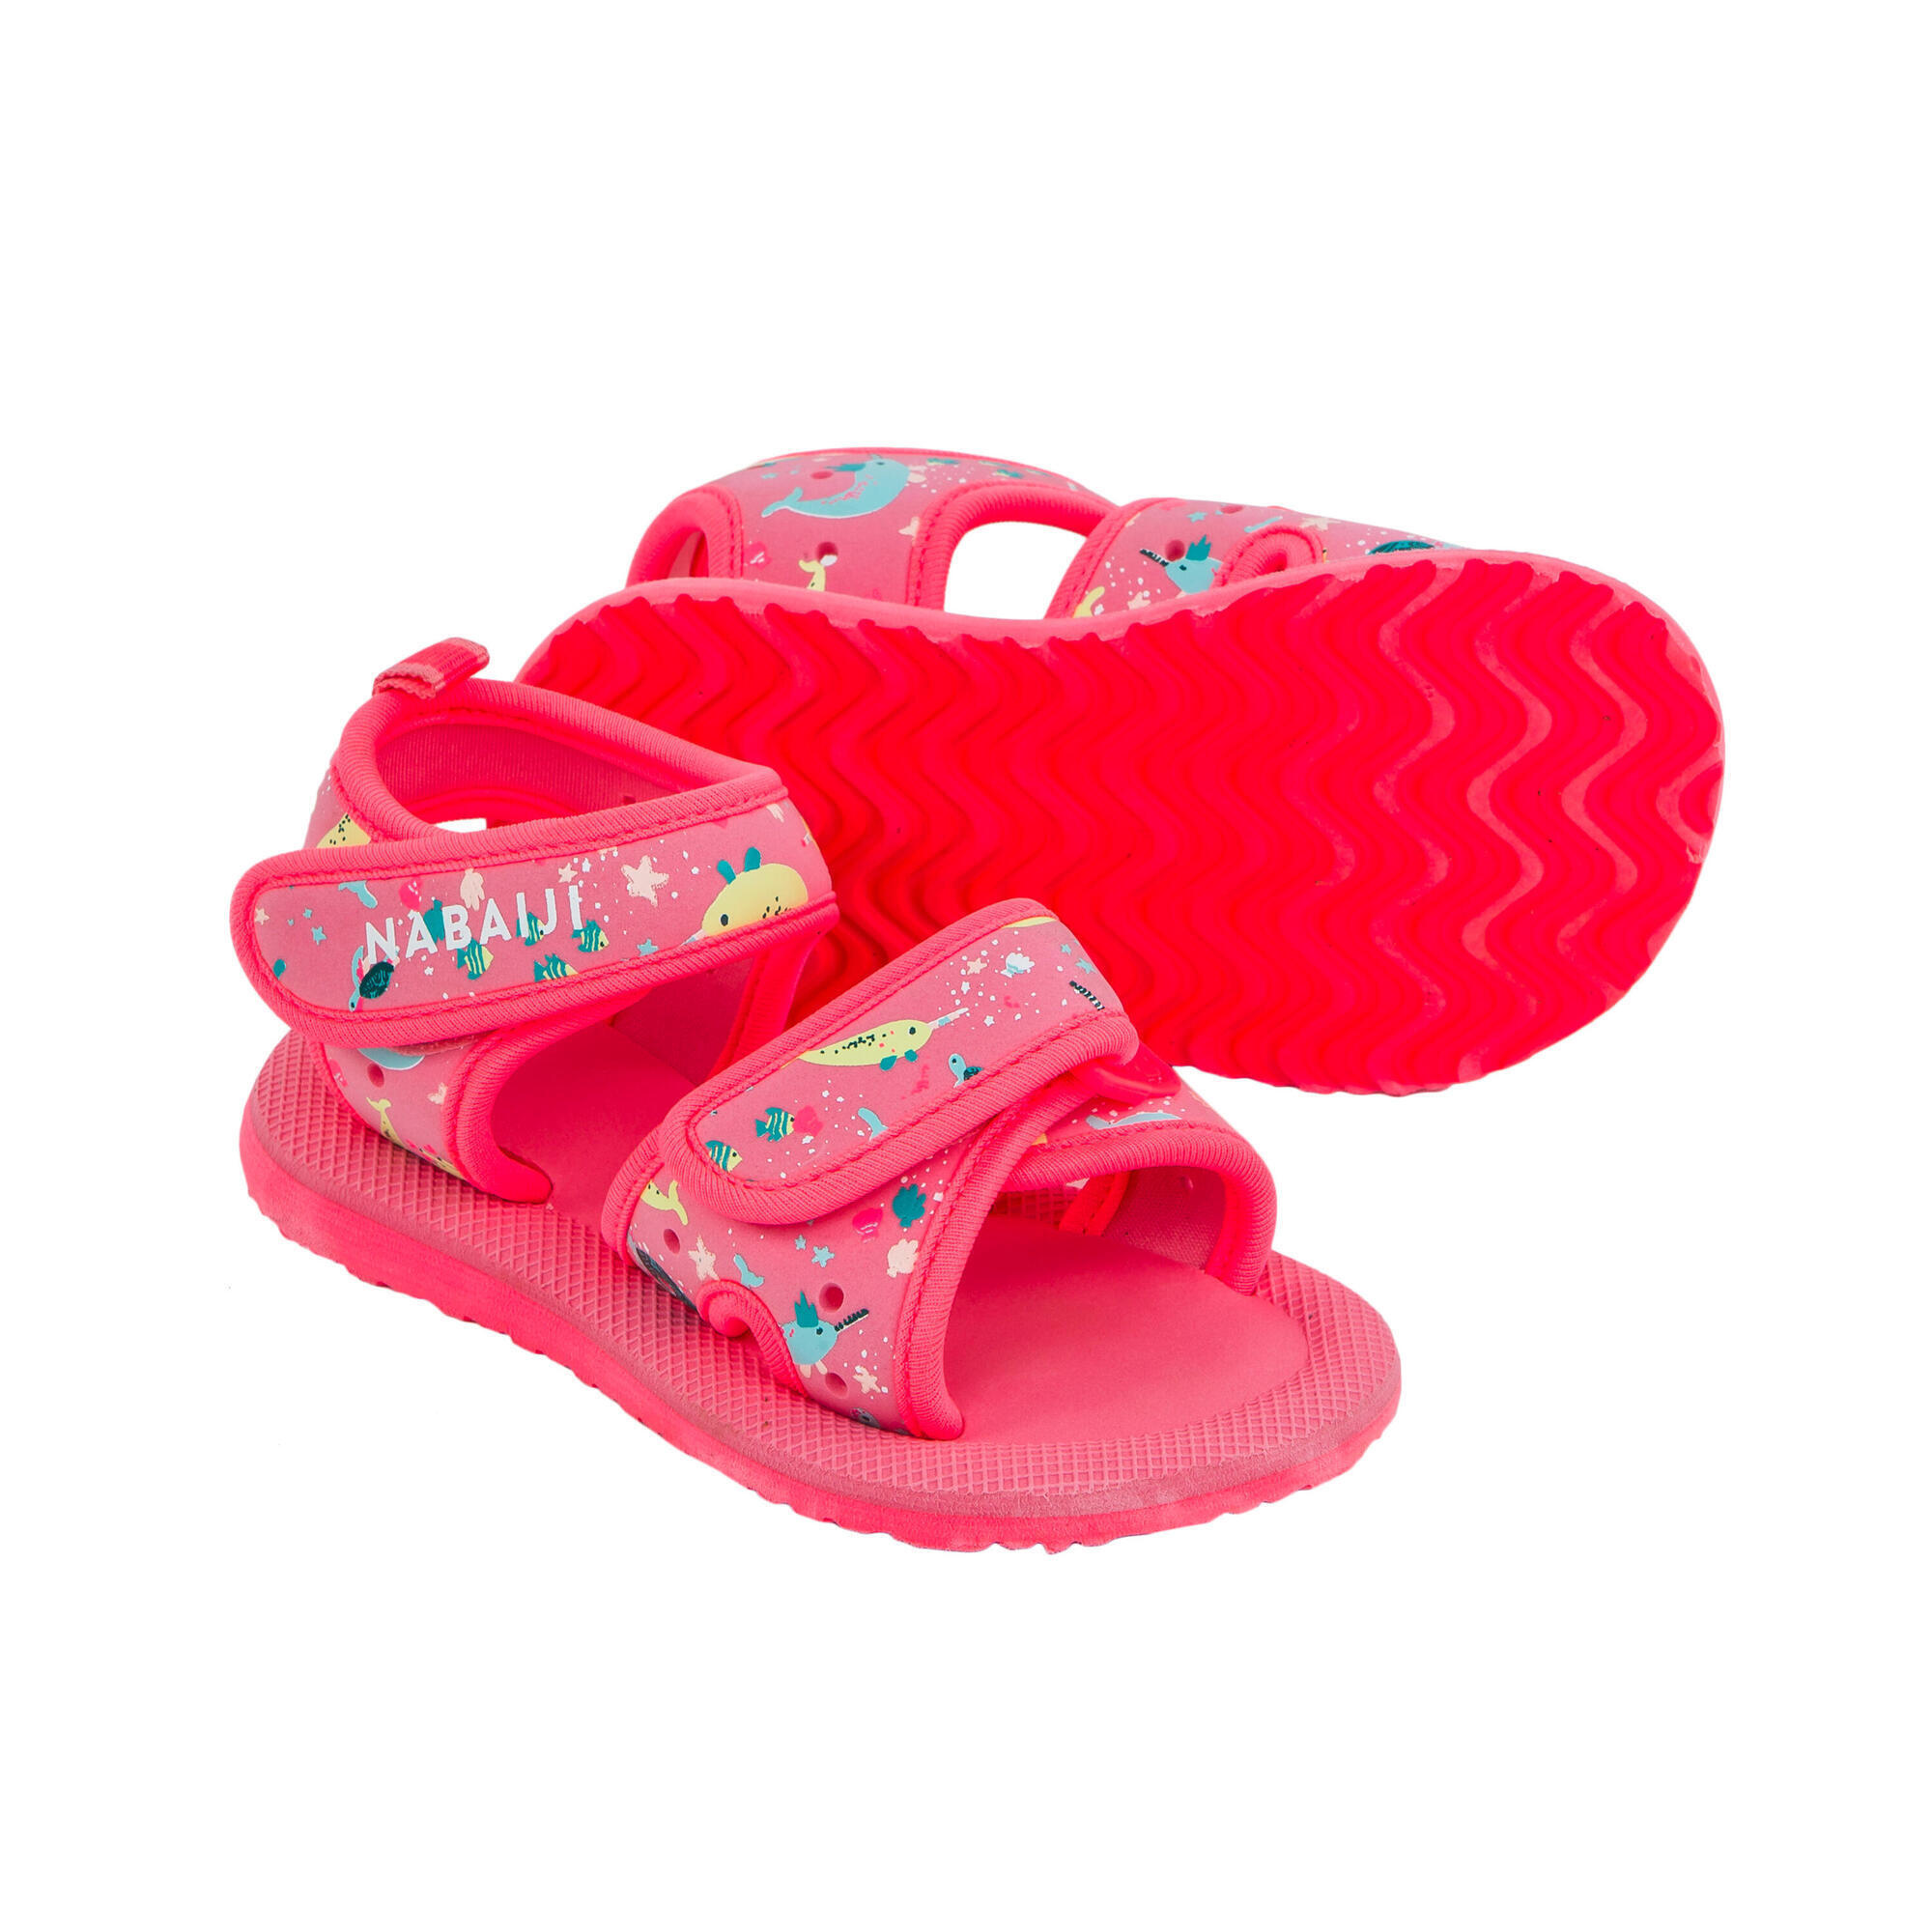 Bambini Abbigliamento bambino Scarpe Sandali Chaussure plage 